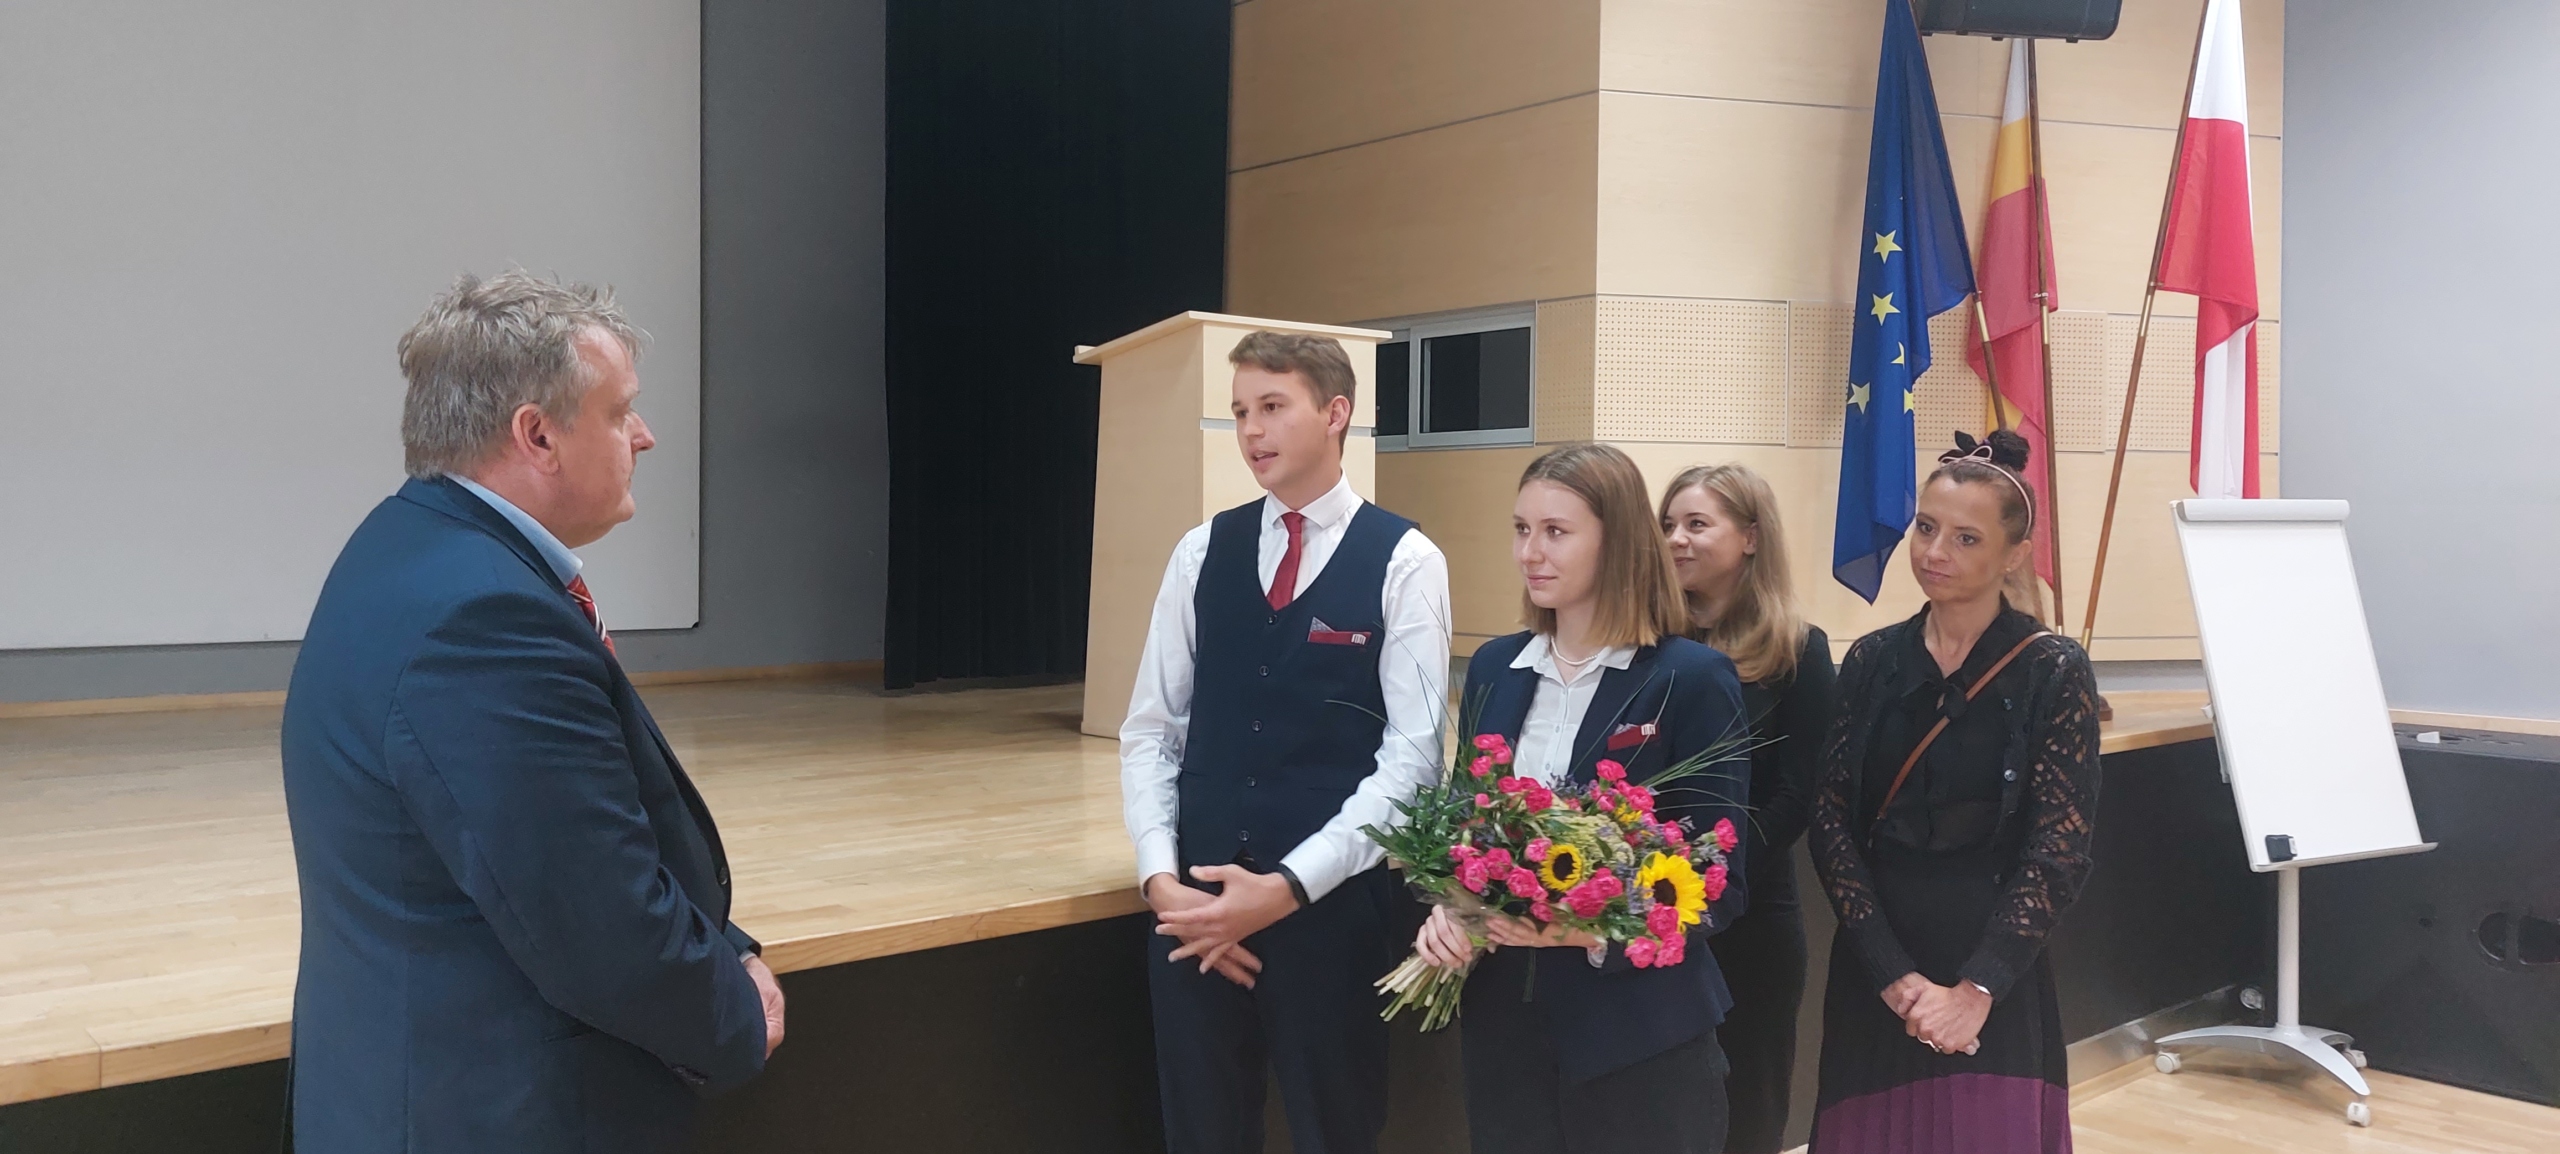 Przedstawiciele Samorządu Uczniowskiego wręczają kwiaty nowemu dyrektorowi szkoły